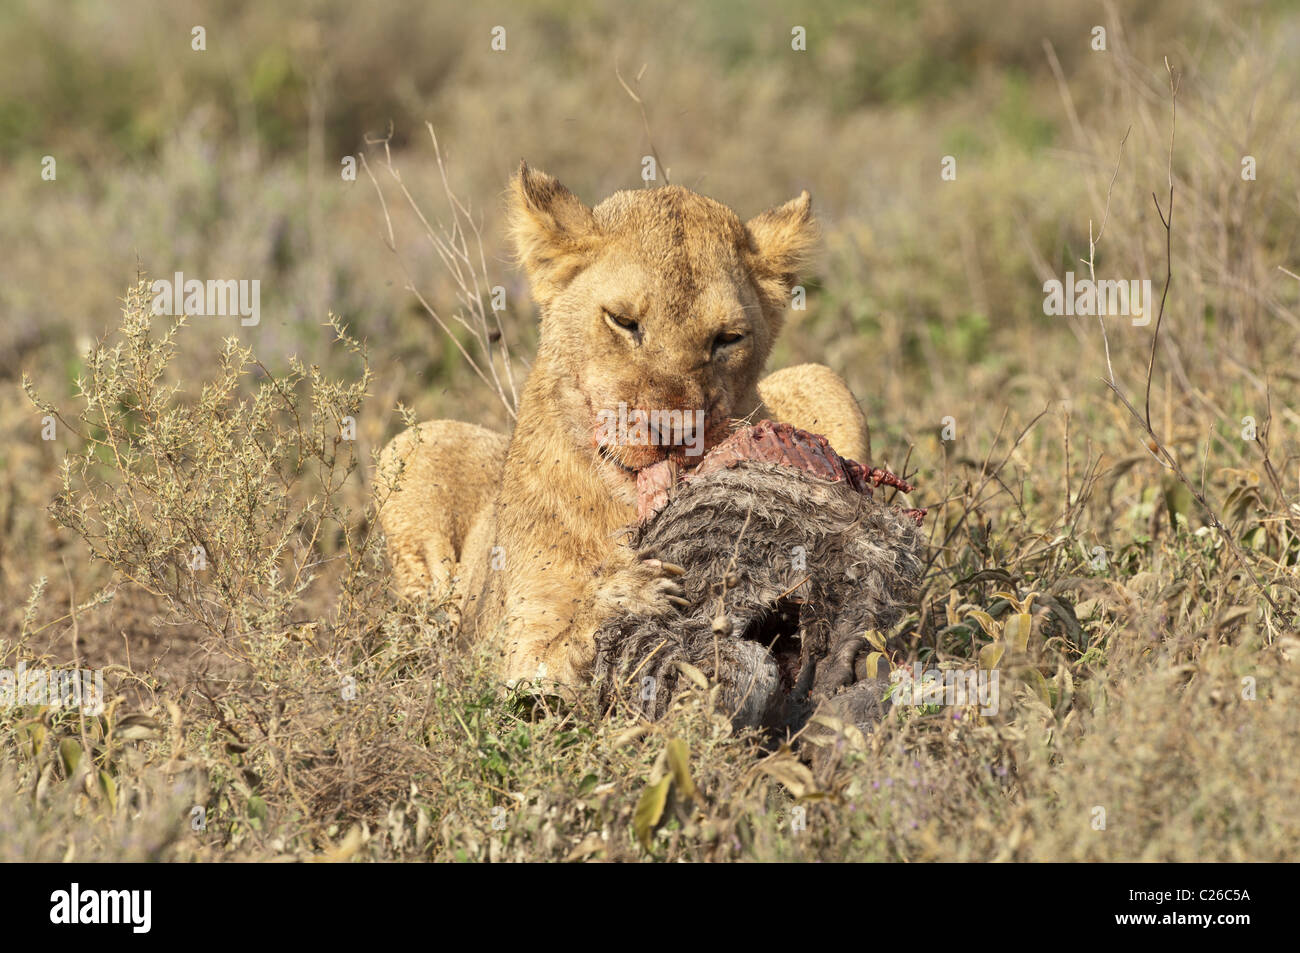 Stock Foto eines jungen männlichen Löwen kauen auf den Kadaver ein Zebra Fohlen. Stockfoto